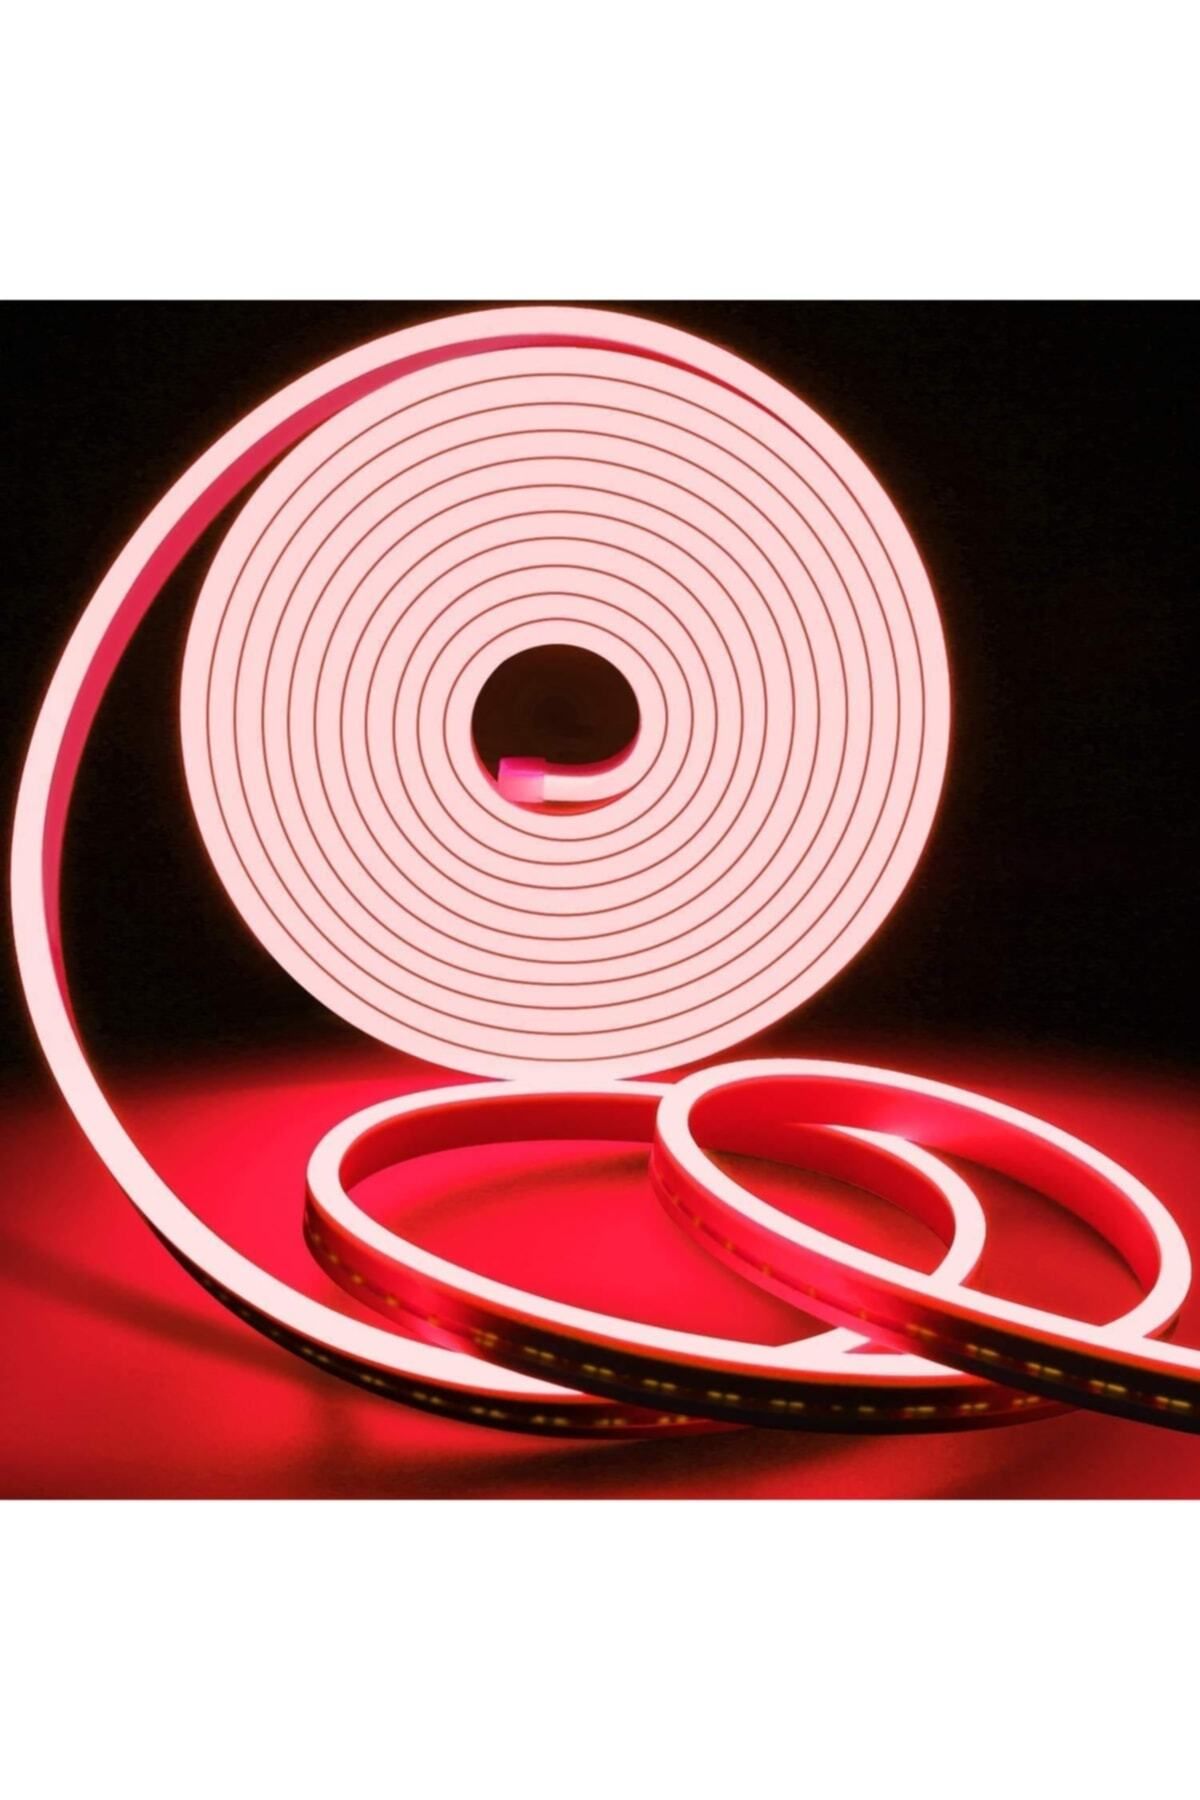 Ema Dükkan 12 Volt 10 Metre Kırmızı Neon Led Işık Prize Takılmaya Hazır Değil Neon Şerit Led Esnek Silikonlu